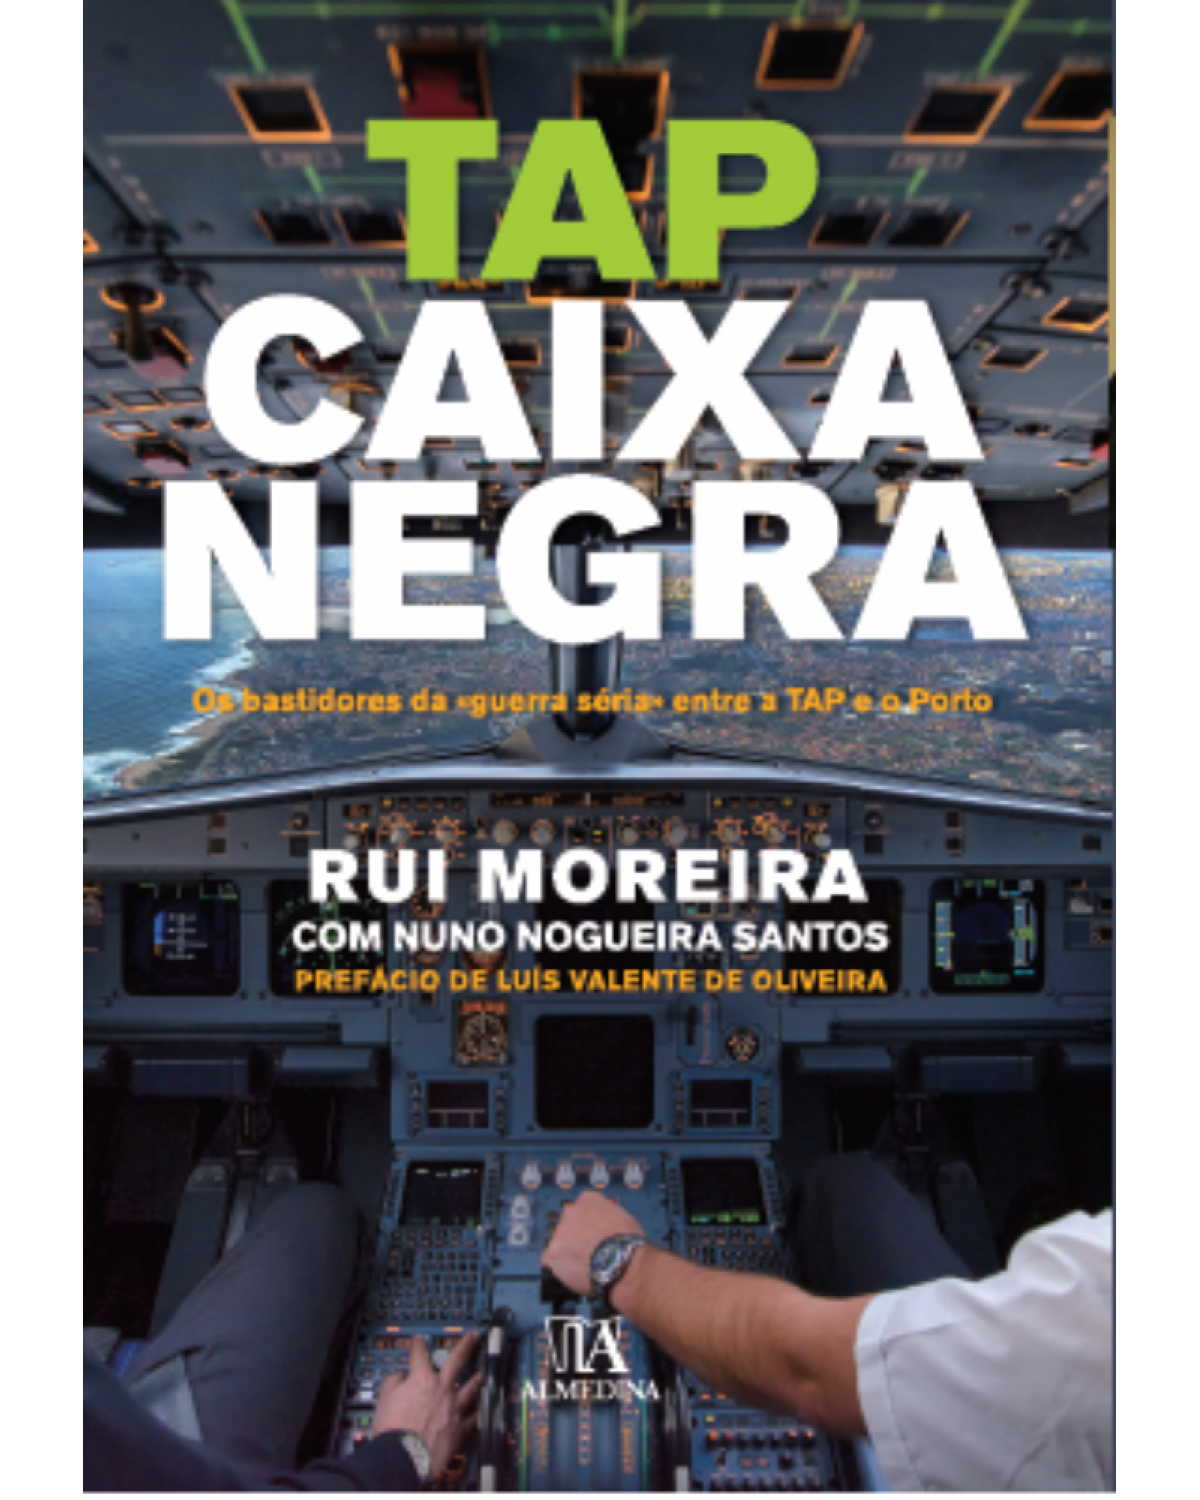 TAP - Caixa negra - os bastidores da «guerra séria» entre a TAP e o Porto - 1ª Edição | 2016